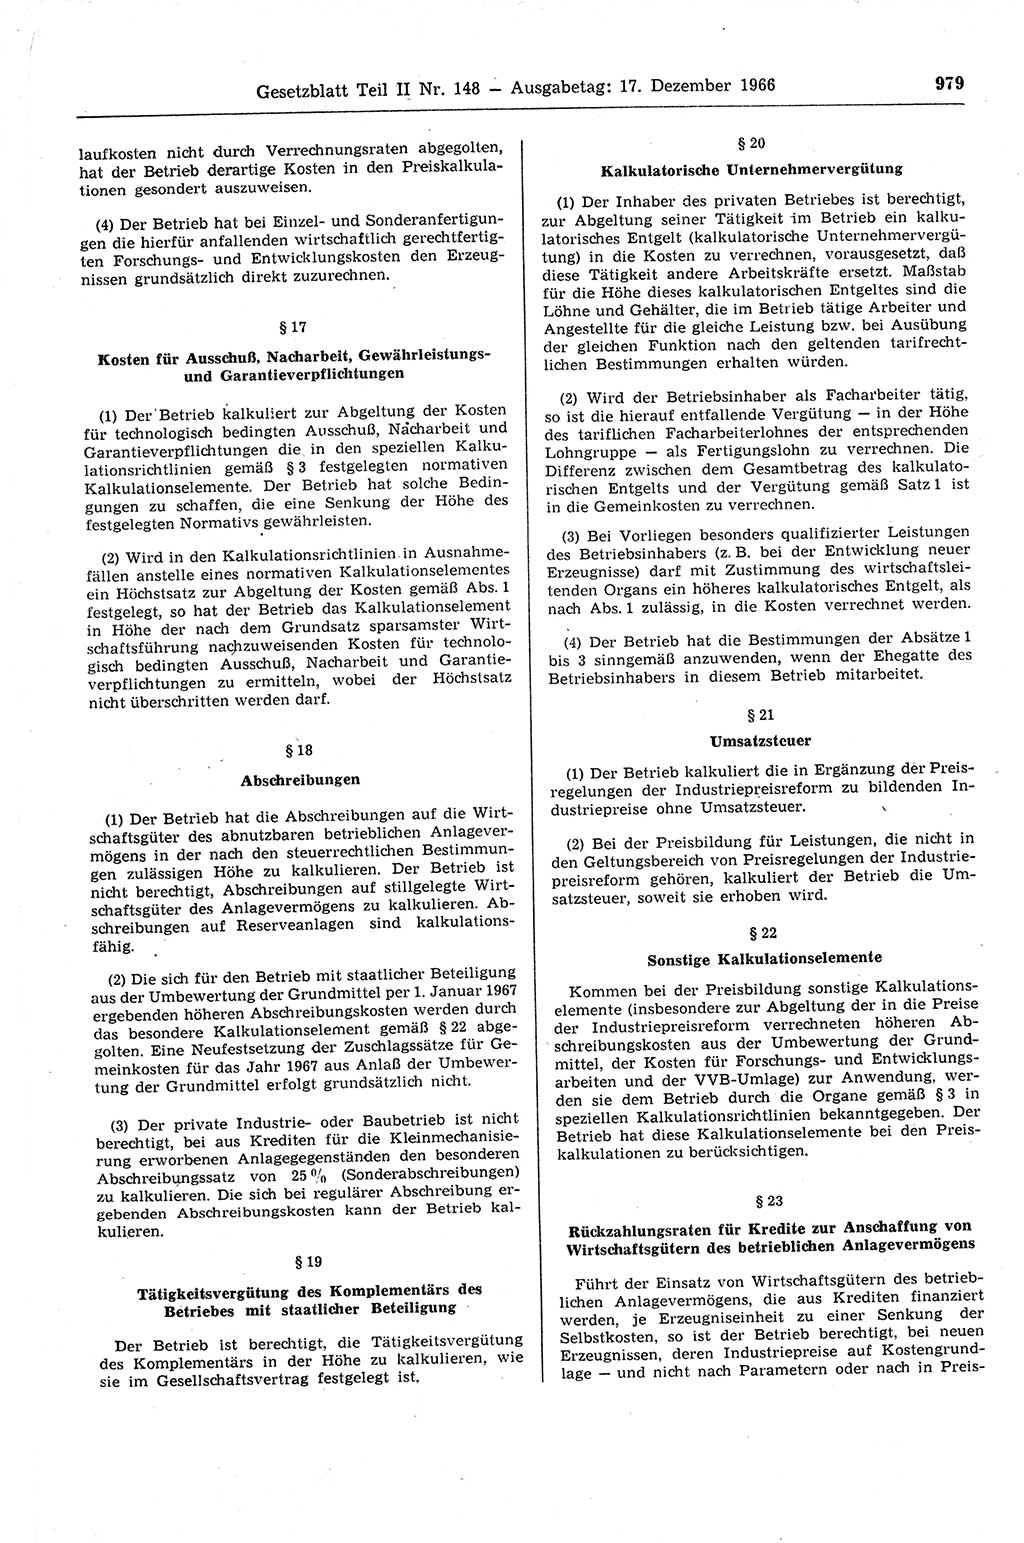 Gesetzblatt (GBl.) der Deutschen Demokratischen Republik (DDR) Teil ⅠⅠ 1966, Seite 979 (GBl. DDR ⅠⅠ 1966, S. 979)